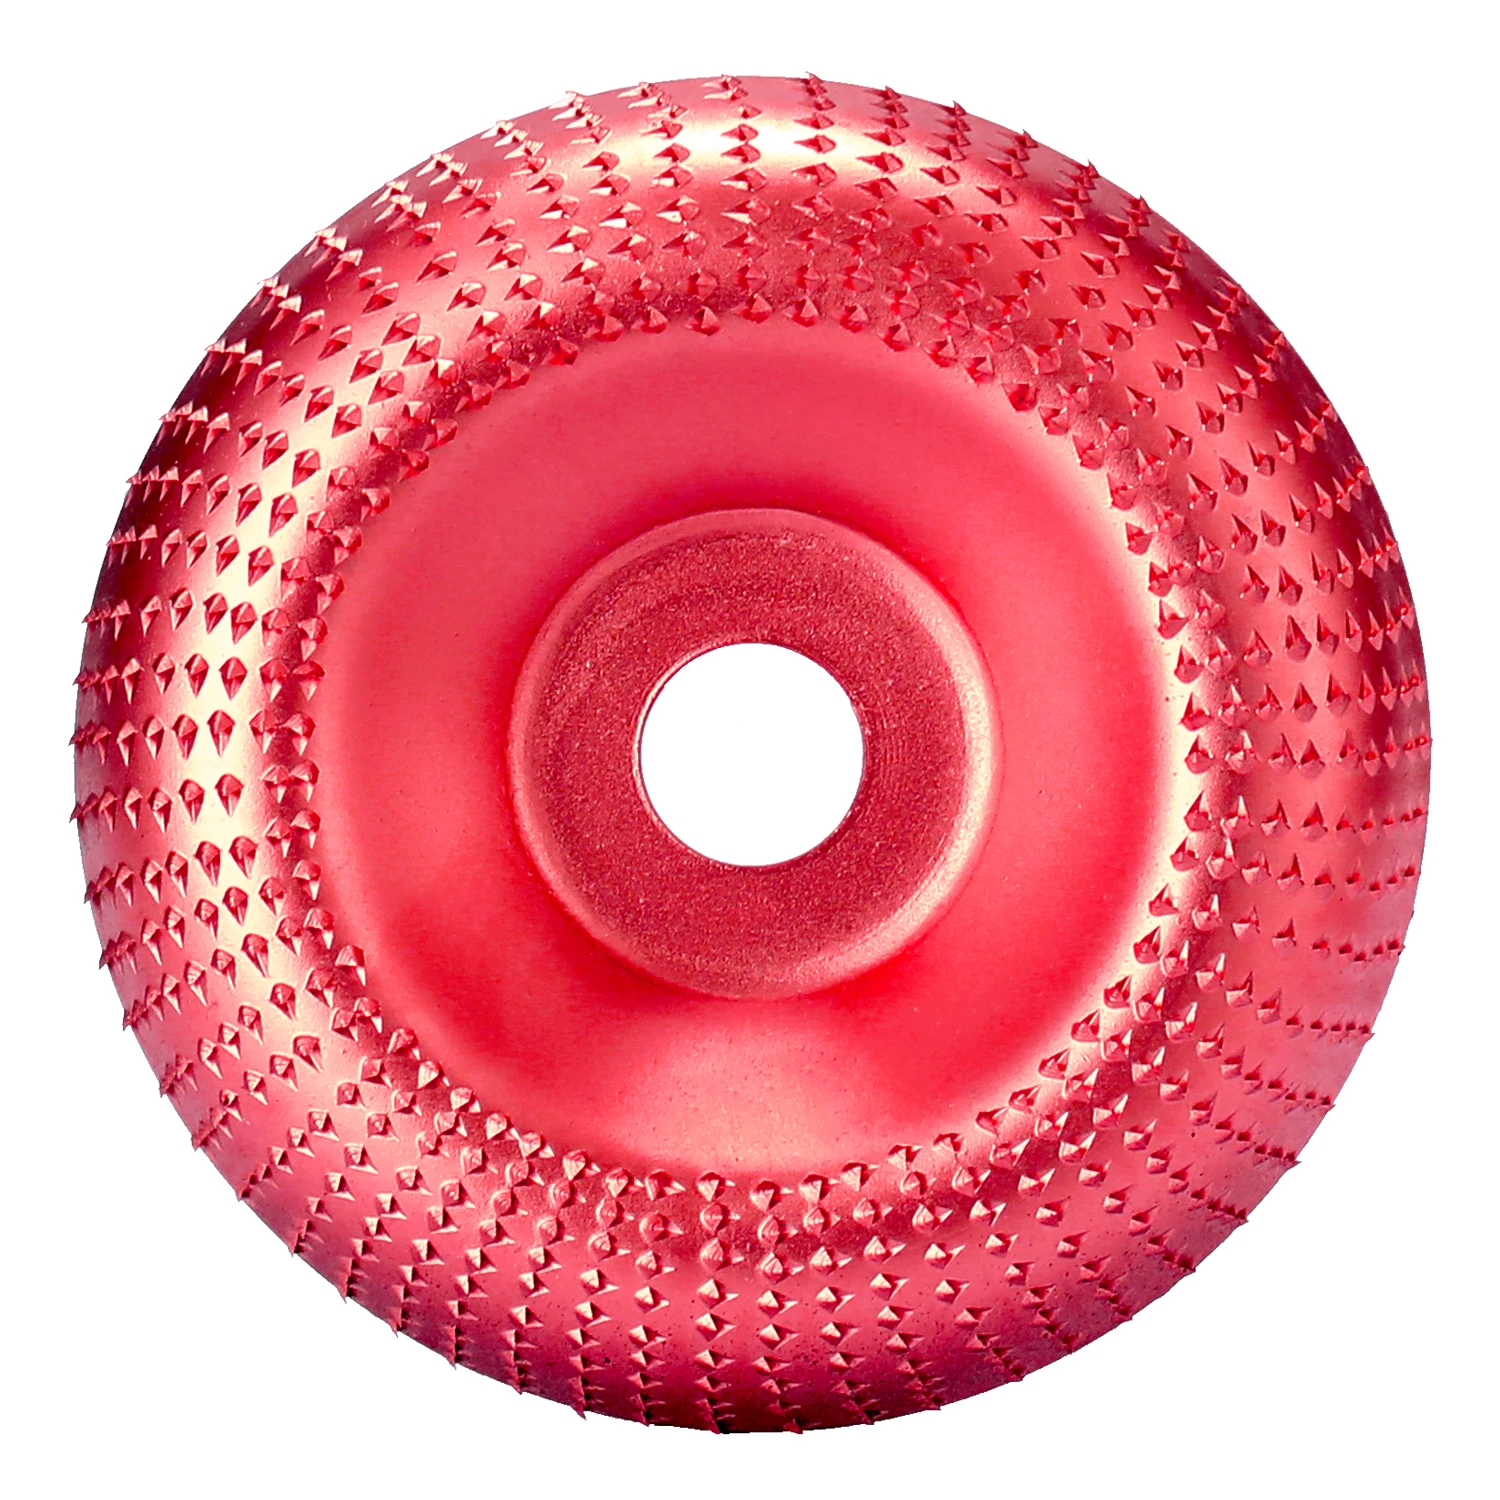 KKMOON Профессиональный диаметр деревянного углового шлифовального колеса 85 мм/100 мм абразивный диск шлифовальный резной инструмент для углового шлифовального станка диаметр 16 мм